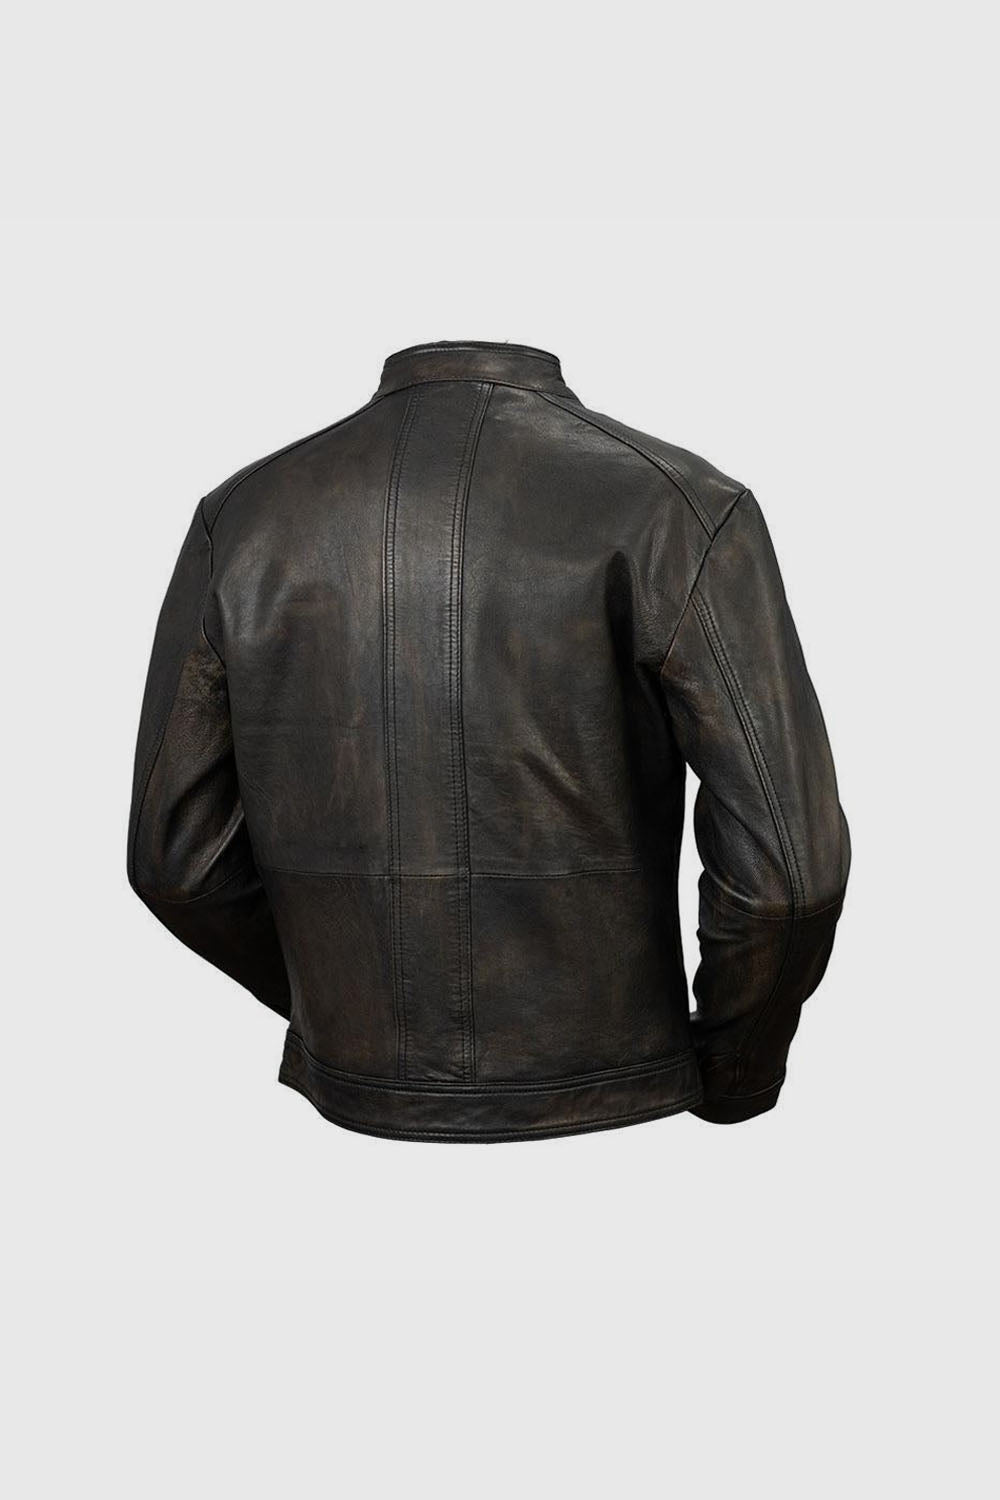 Cruiser Mens Leather Jacket Men's Leather Jacket Whet Blu NYC   